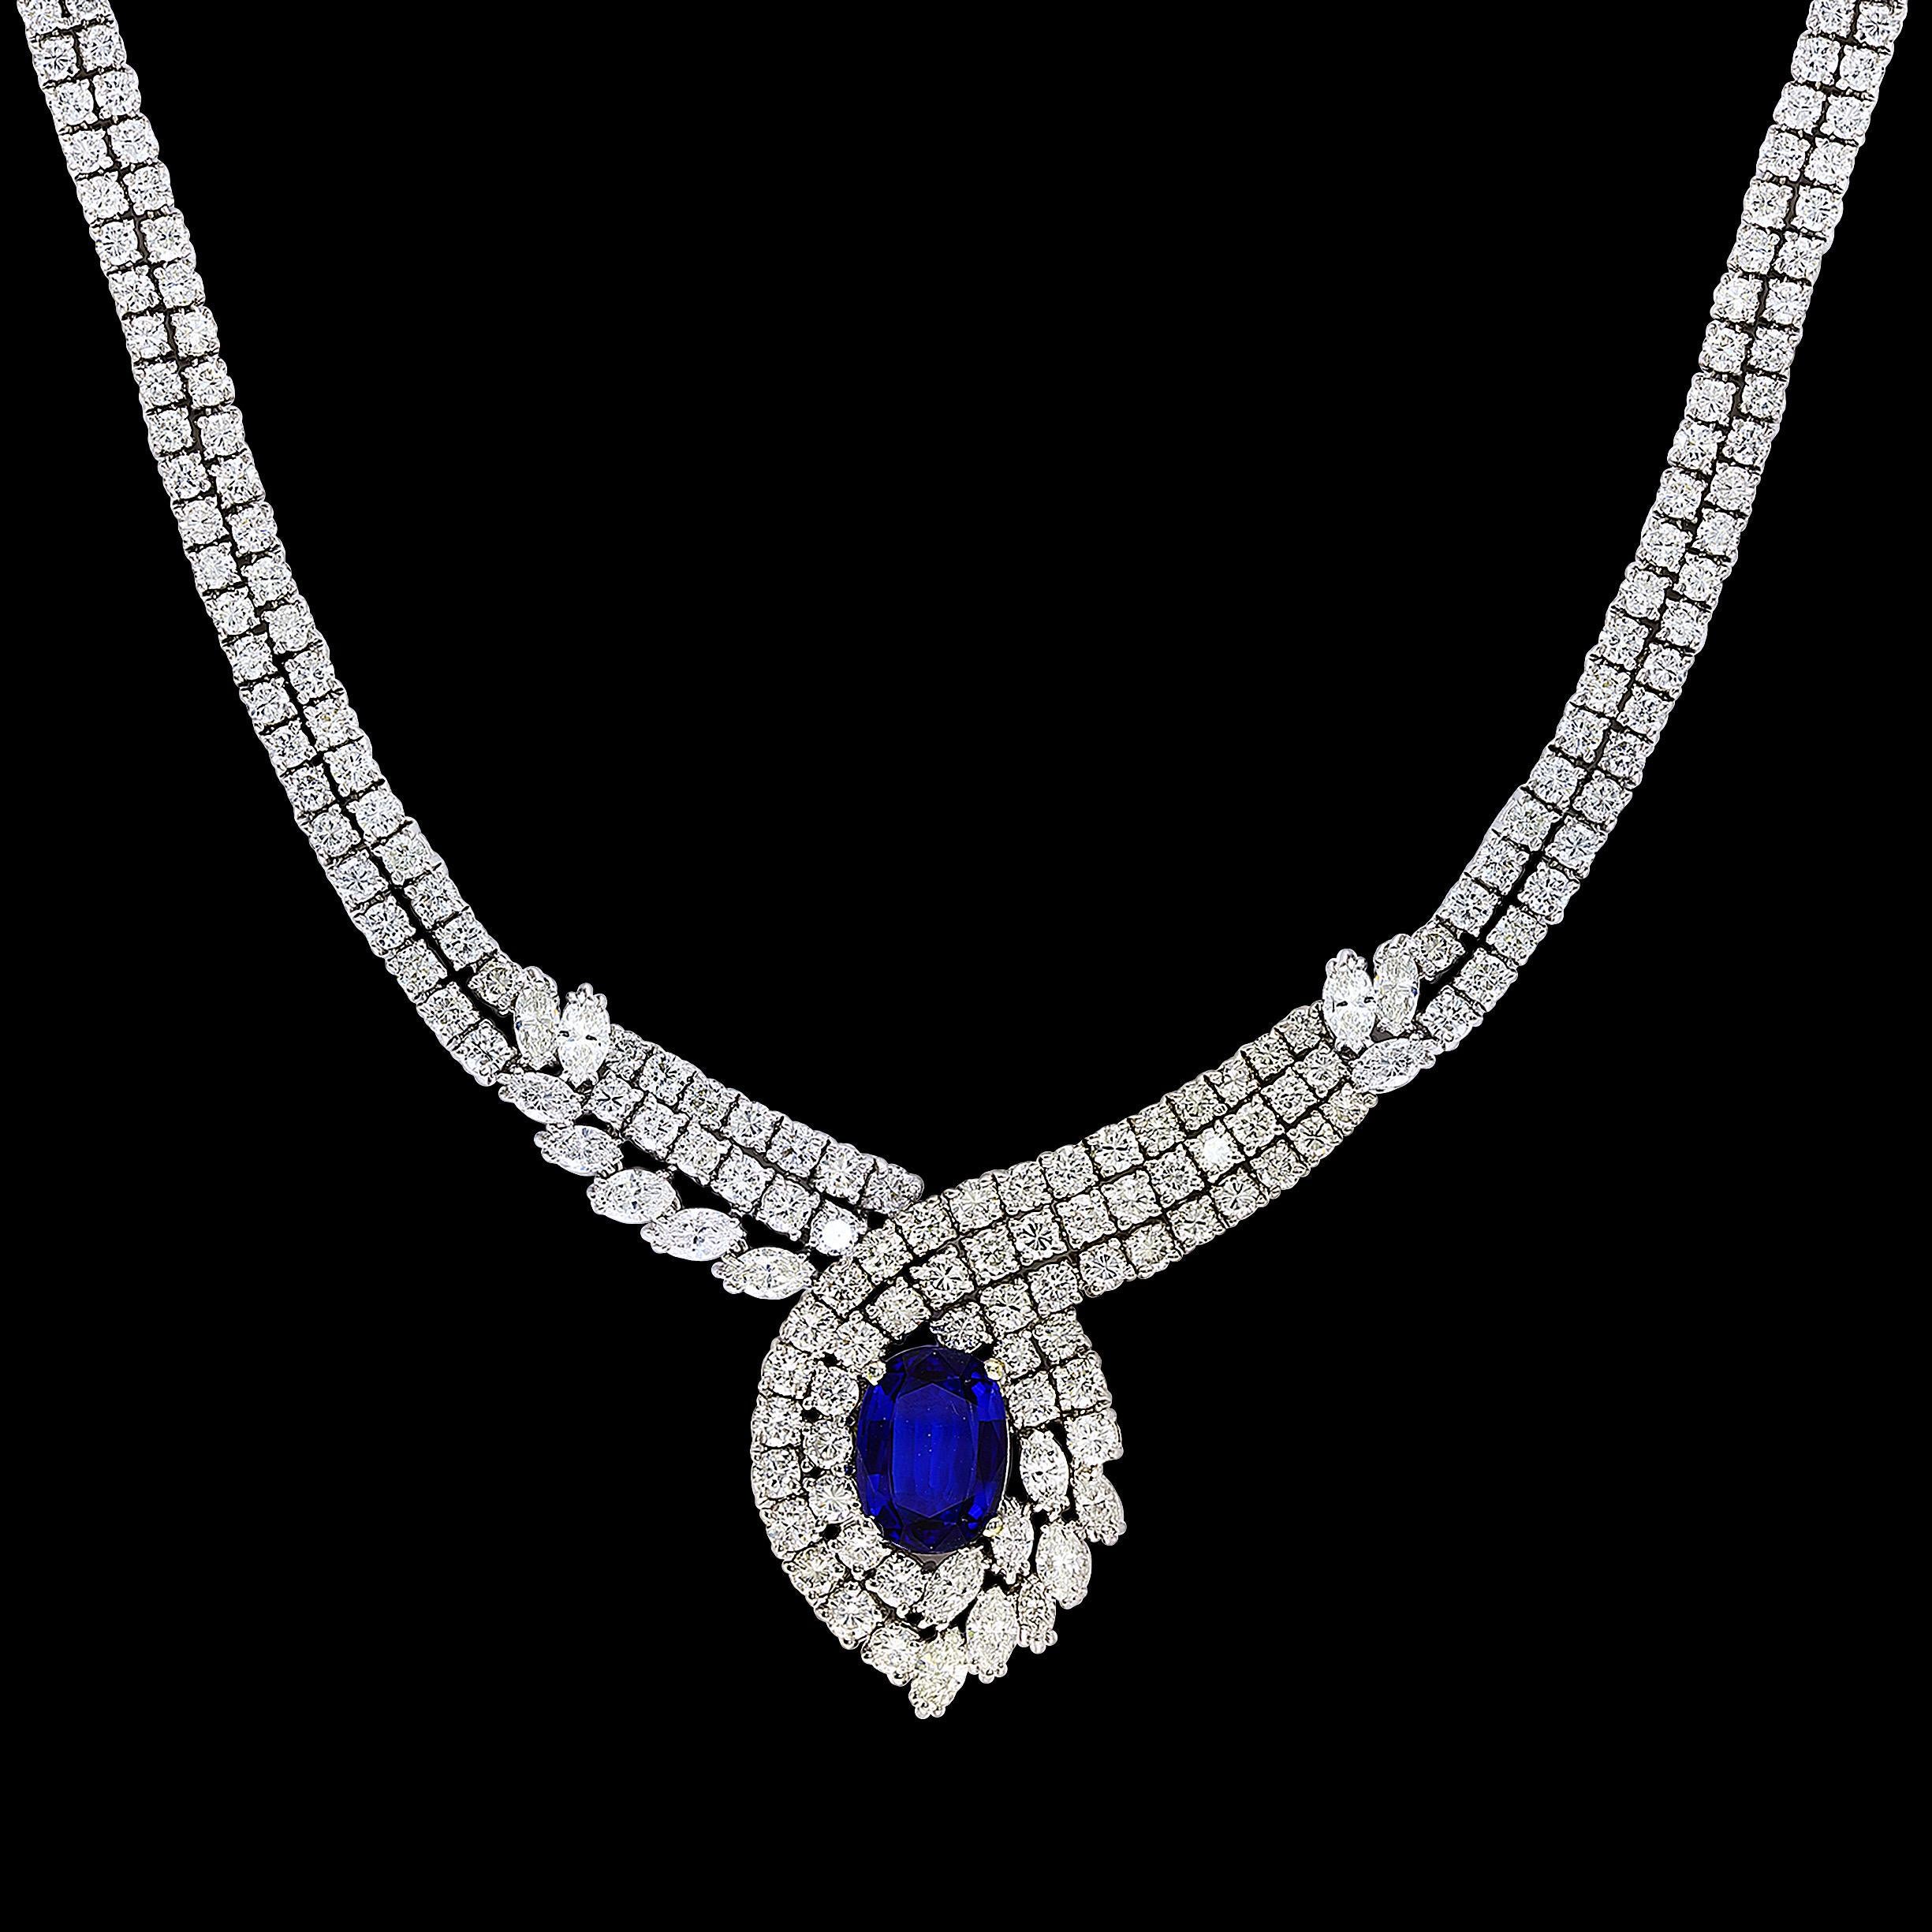 Vintage GIA Certified 6.5 Carat Ceylon Sapphire & 32 Carat Diamond Necklace in  18 Karat  Blanc  Or, 66 Gm
Un de nos colliers haut de gamme de la collection Bridal.
Environ 32 carats de diamants de qualité VS1, tous montés en or 18 carats. Le poids